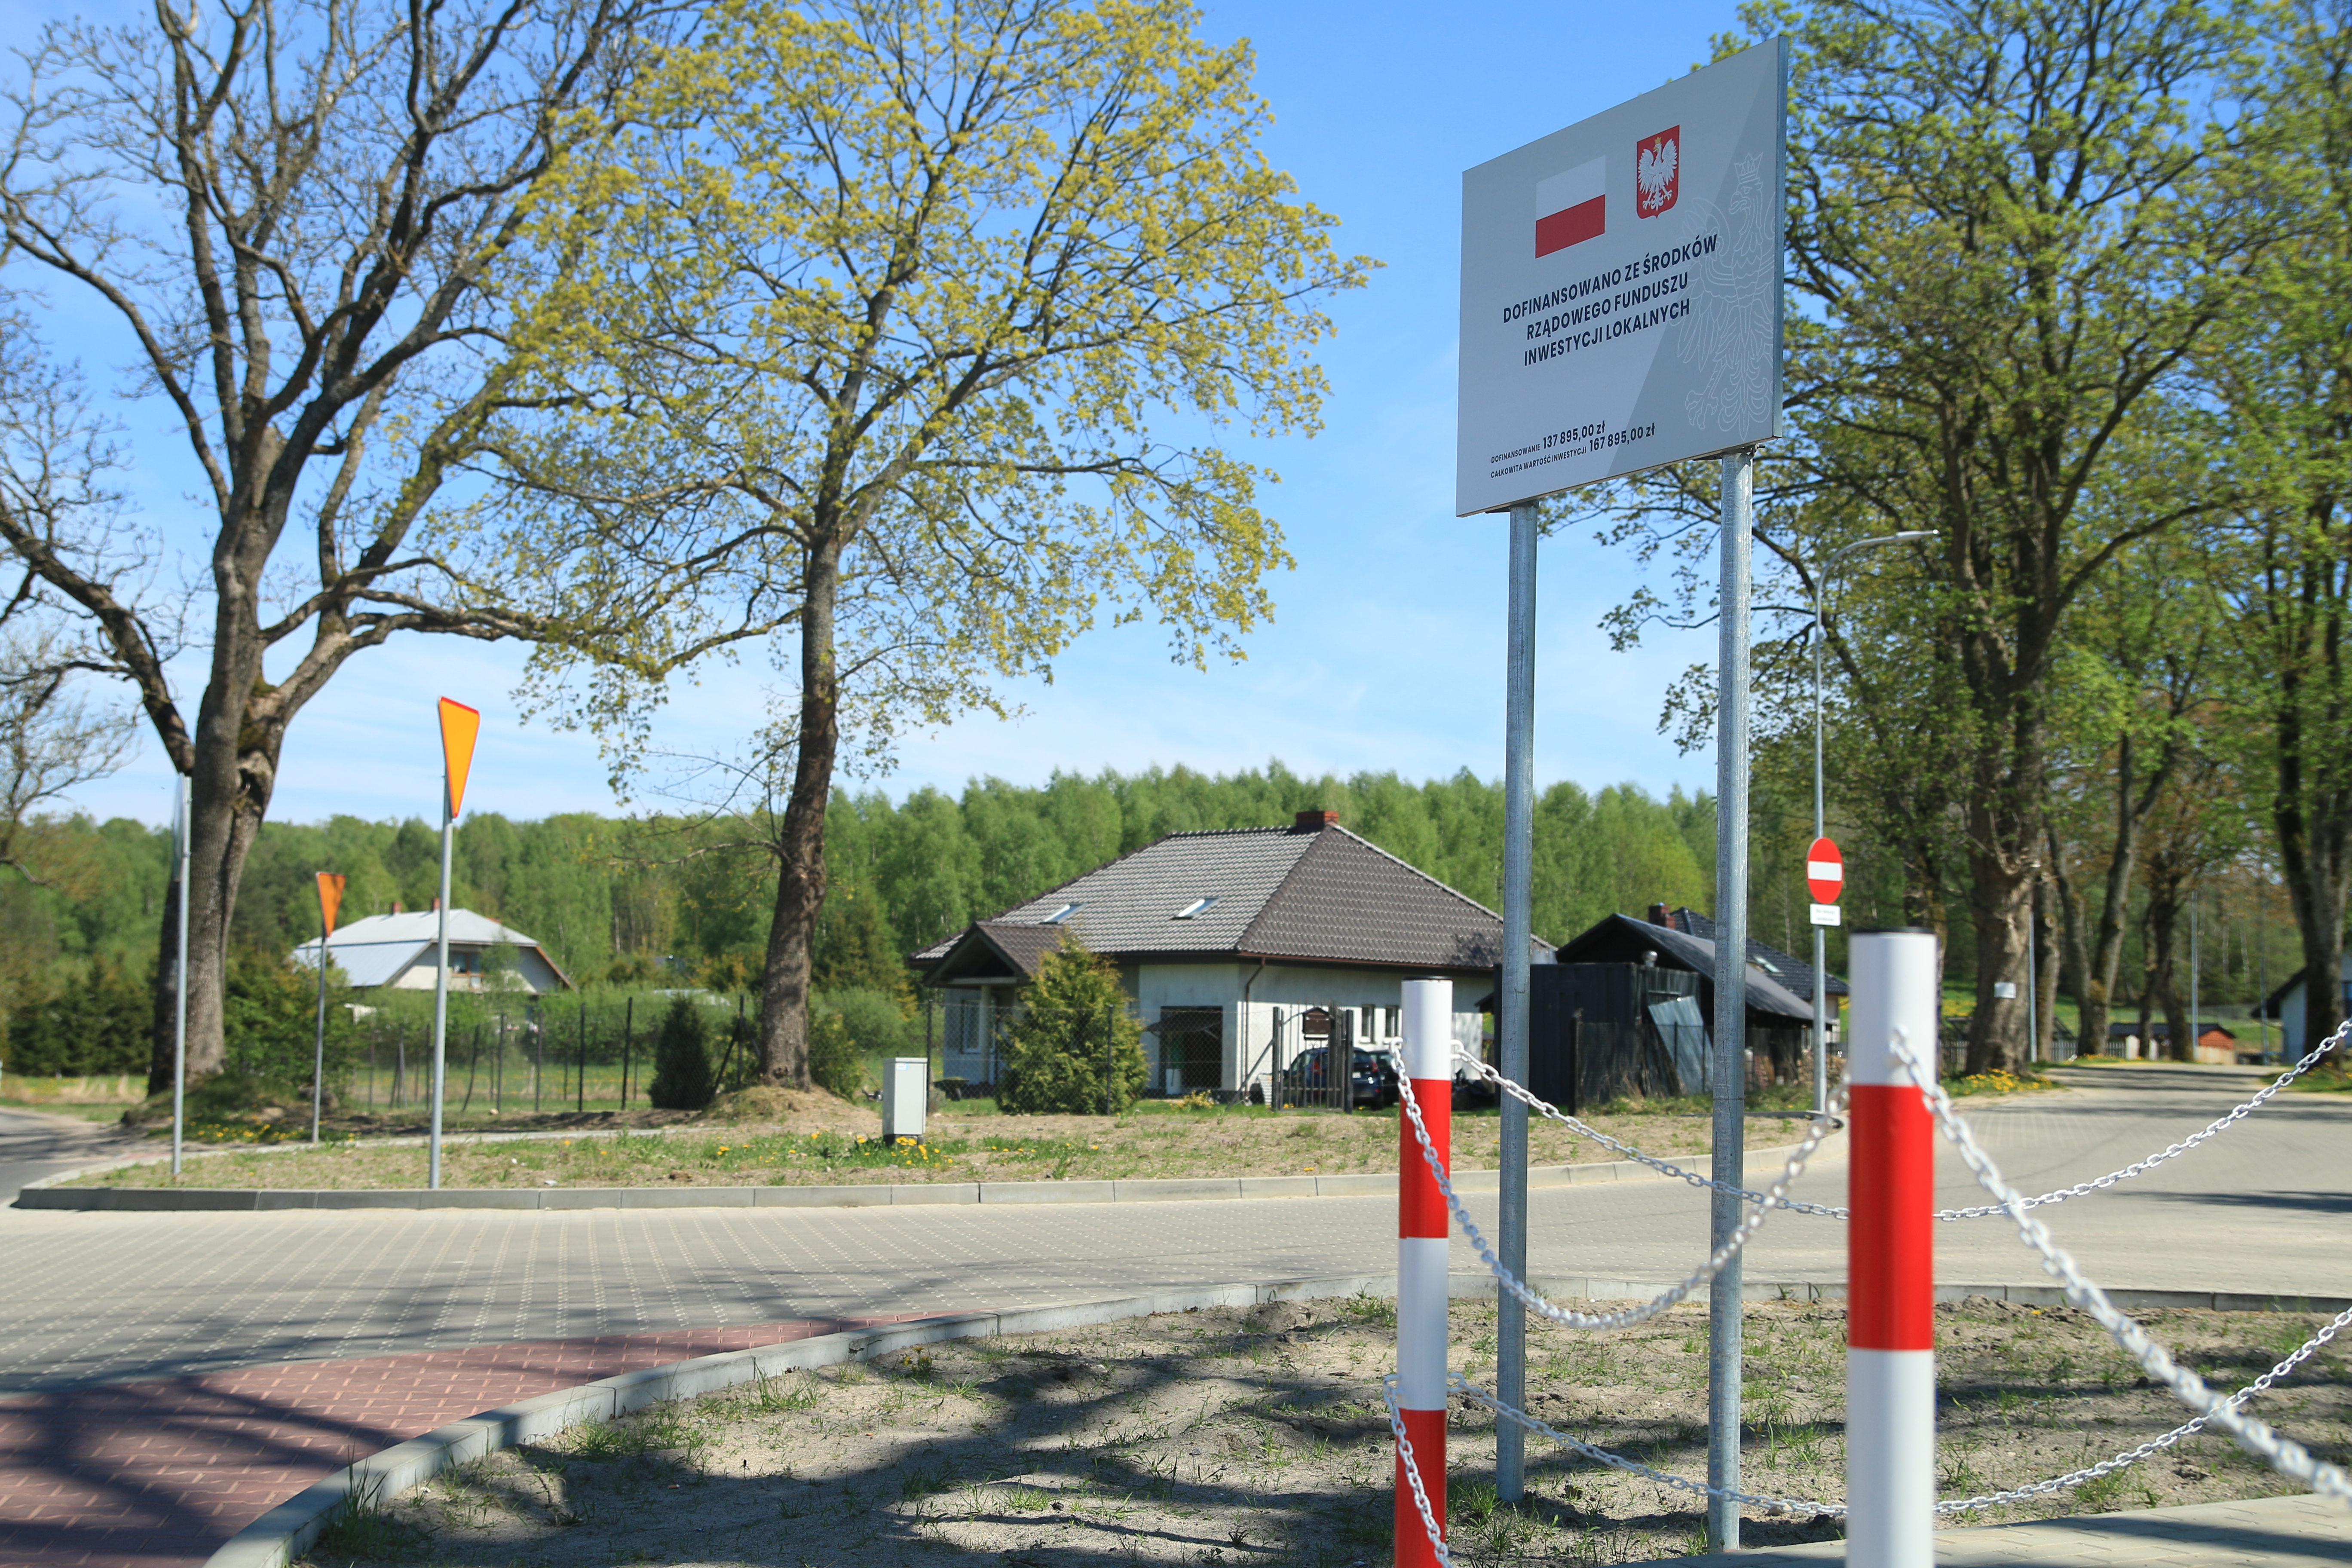 Przebudowane skrzyżowanie w Kębłowie Nowowiejskim - rondo ze zjazdem na Łowcze i zatoczką autobusową. Na pierwszym planie tablica informacyjna o dofinansowaniu z RFIL.